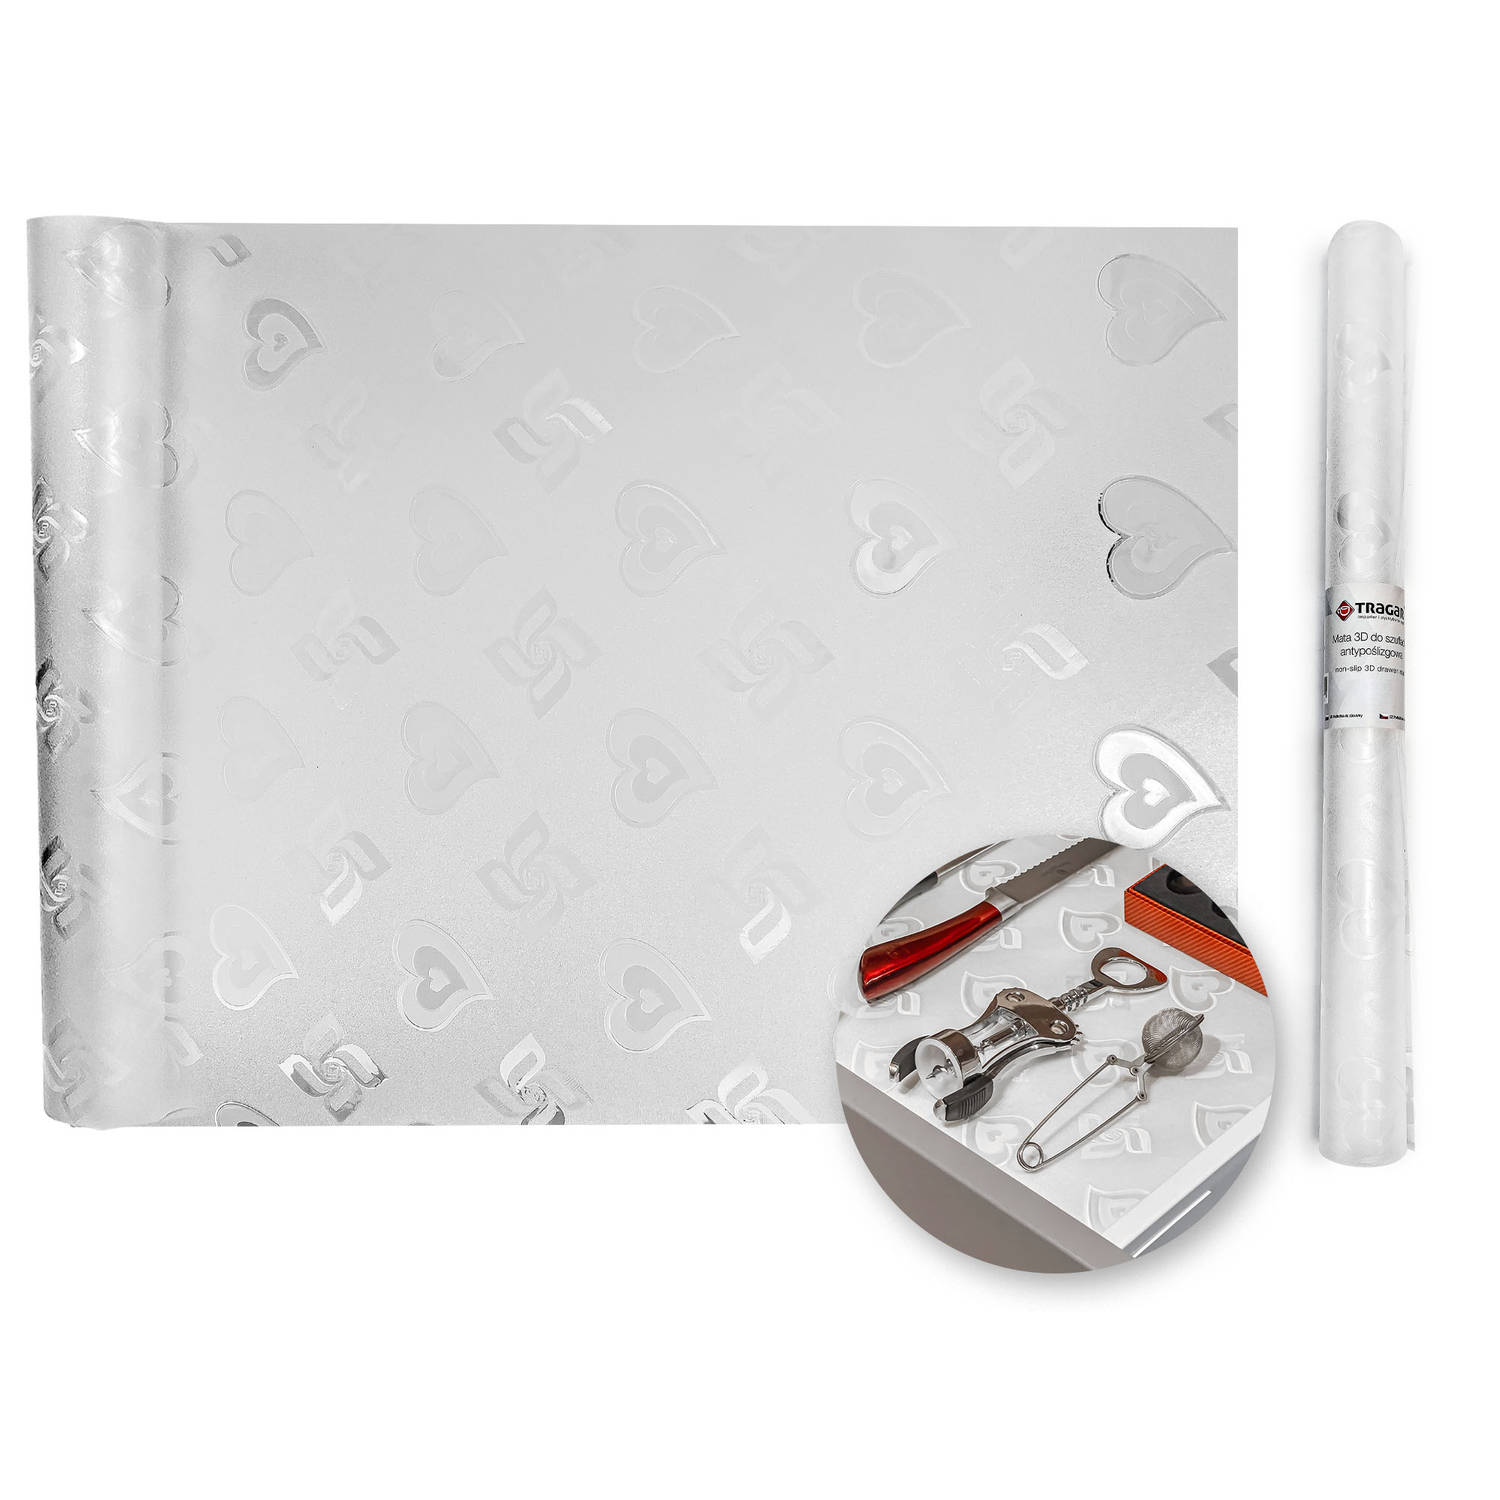 Tragar antislipmat 45 x 300 cm transparant met patroon bescherming voor kasten en keukenlade - extra lang - antislip kast - anti slip mat - Lade beschermer